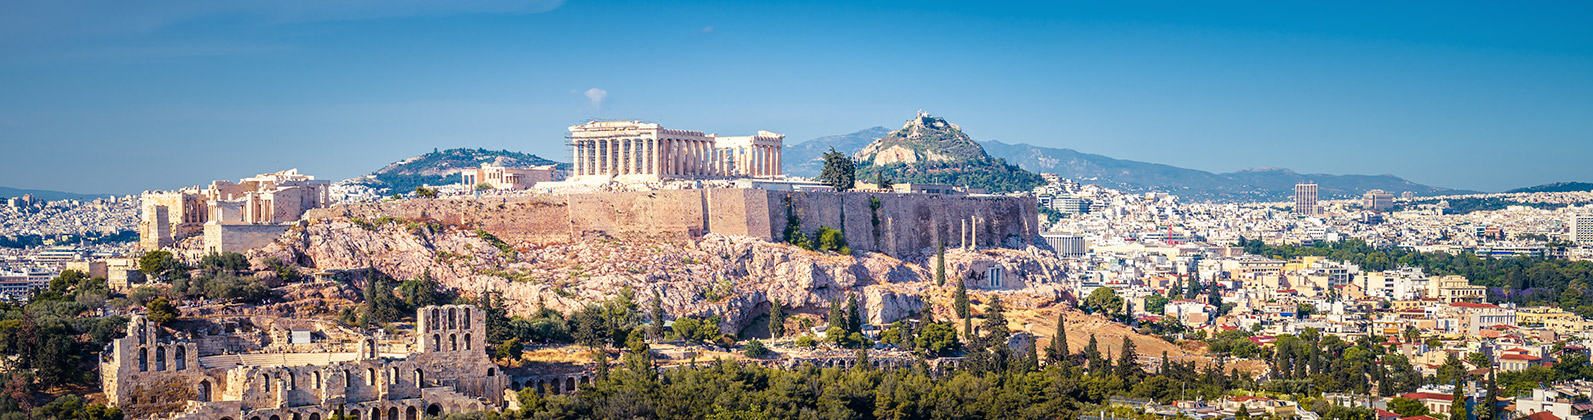 Urlaub in Athen